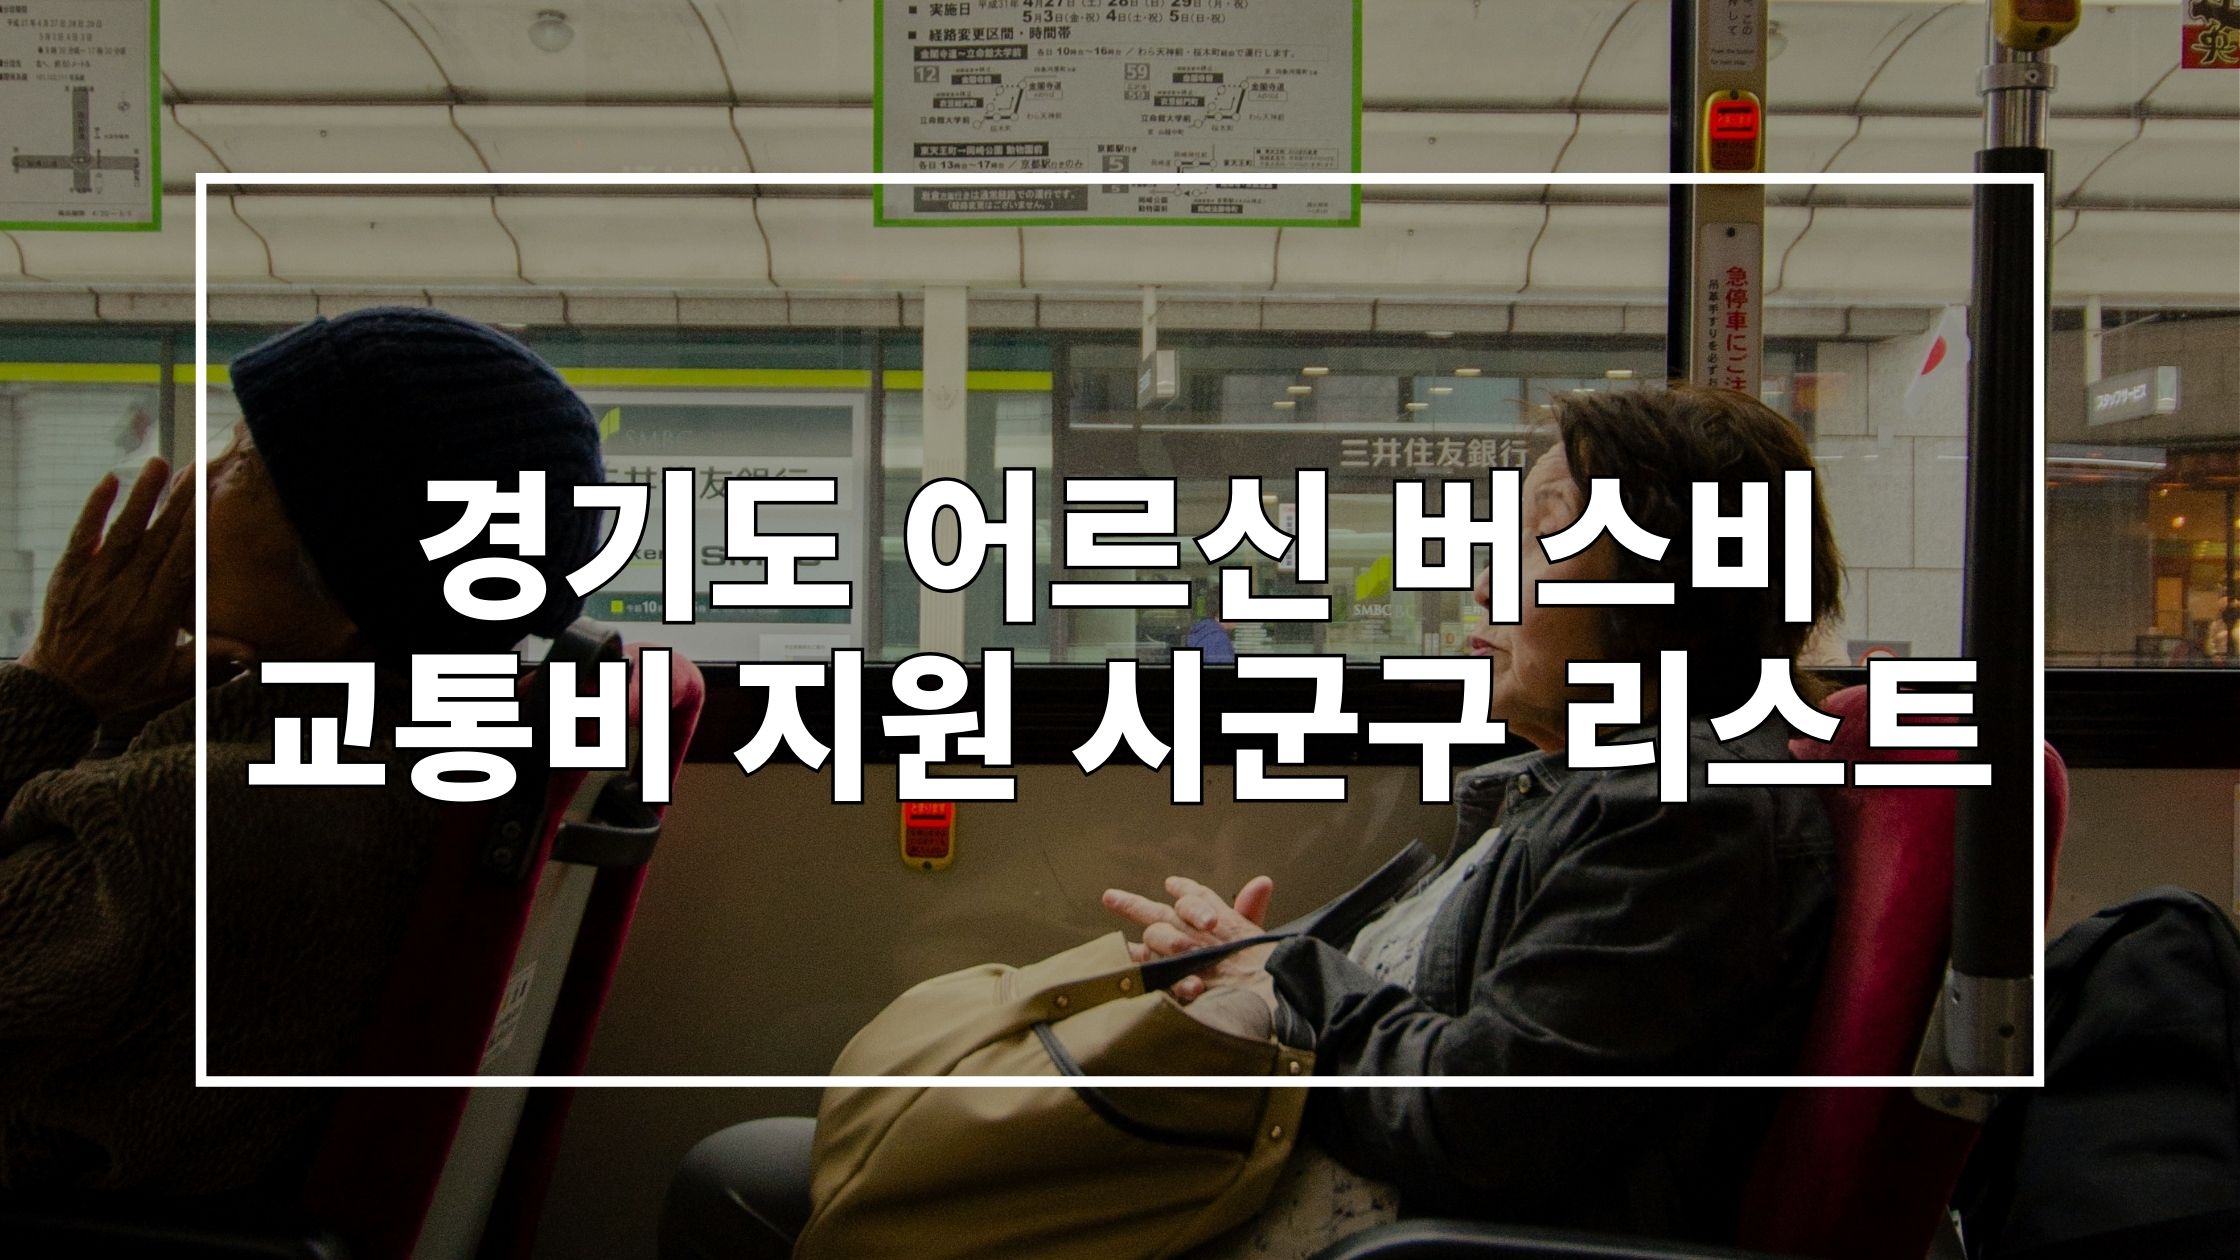 버스 탑승한 승객 사진 위에 '경기도 어르신 버스비 교통비 지원 시군구 리스트'라고 쓰인 썸네일 이미지입니다.